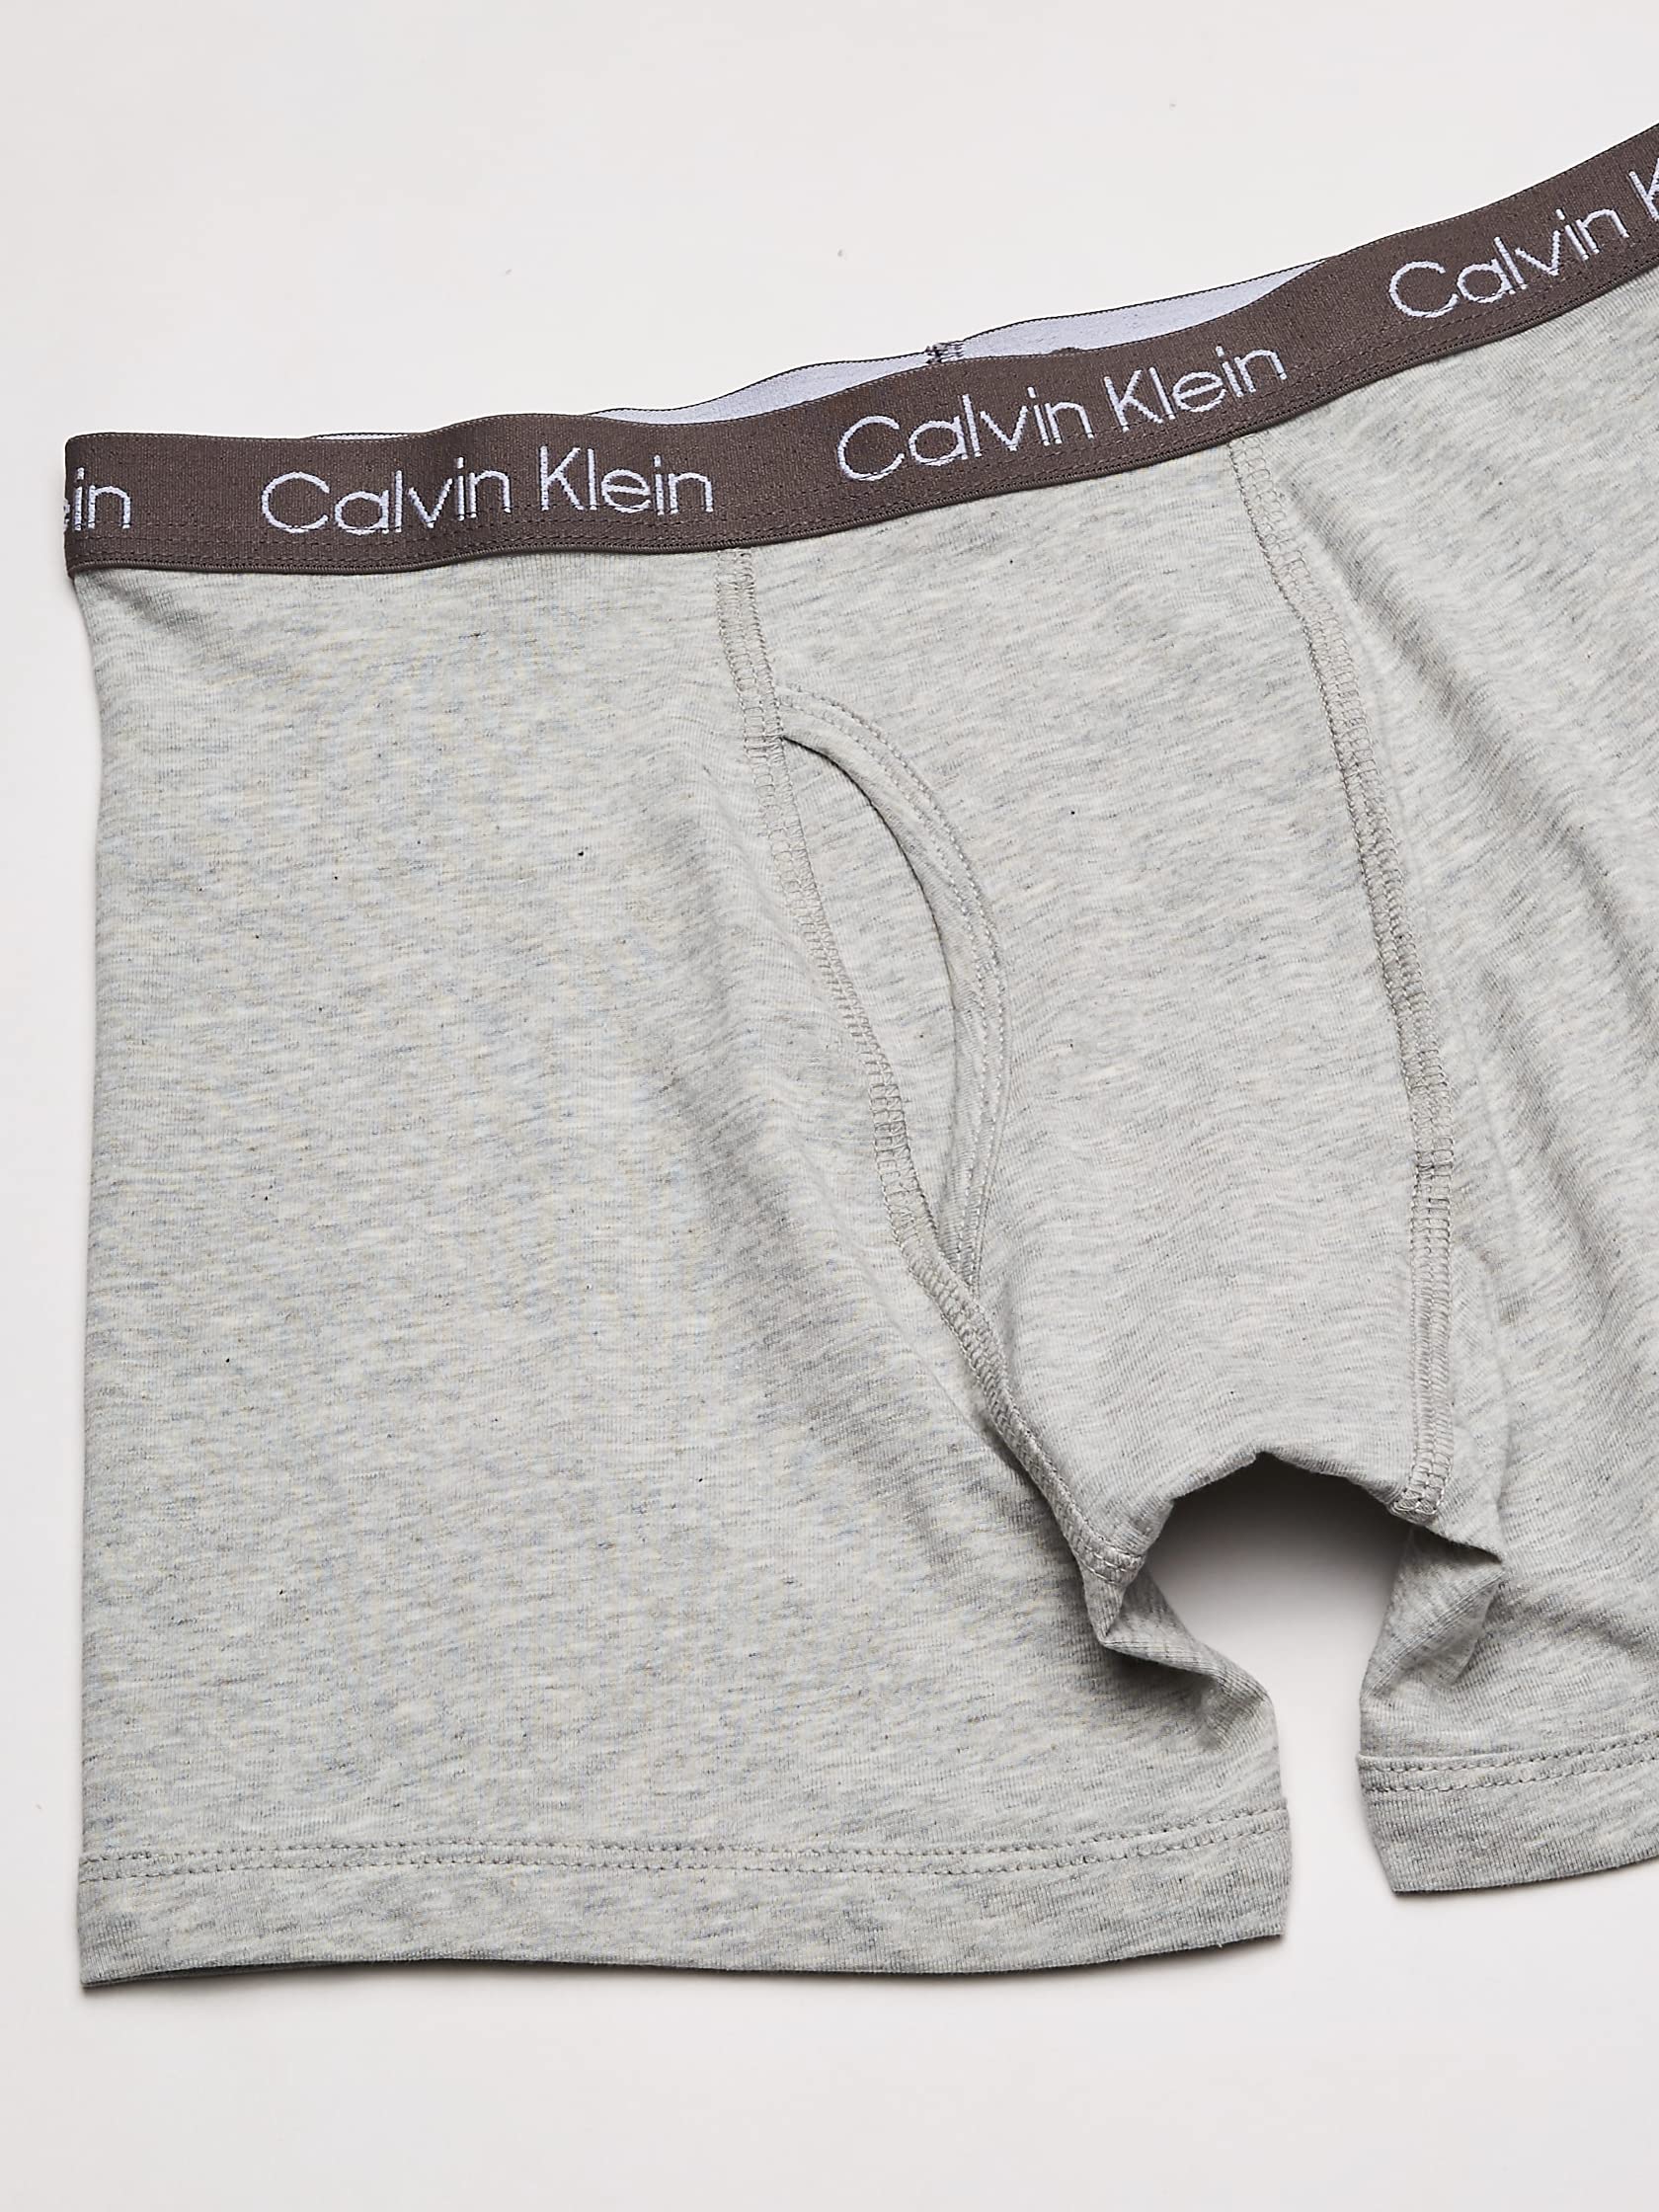 Calvin Klein Boys' Underwear 4 Pack Boxer Briefs Value Pack